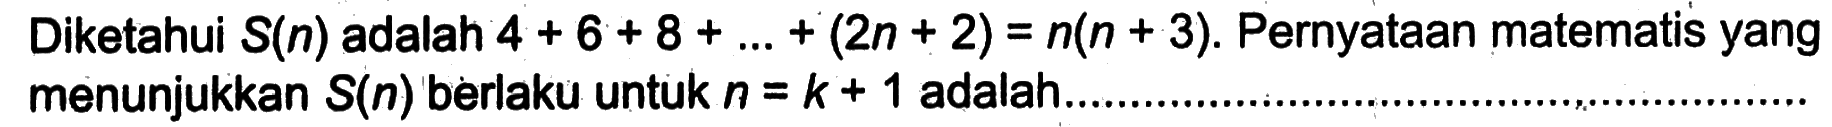 Diketahui S(n) adalah 4+6+8+ ... +(2n+2)=n(n+3). Pernyataan matematis yang menunjukkan S(n) berlaku untuk n=k+1 adalah.......................................